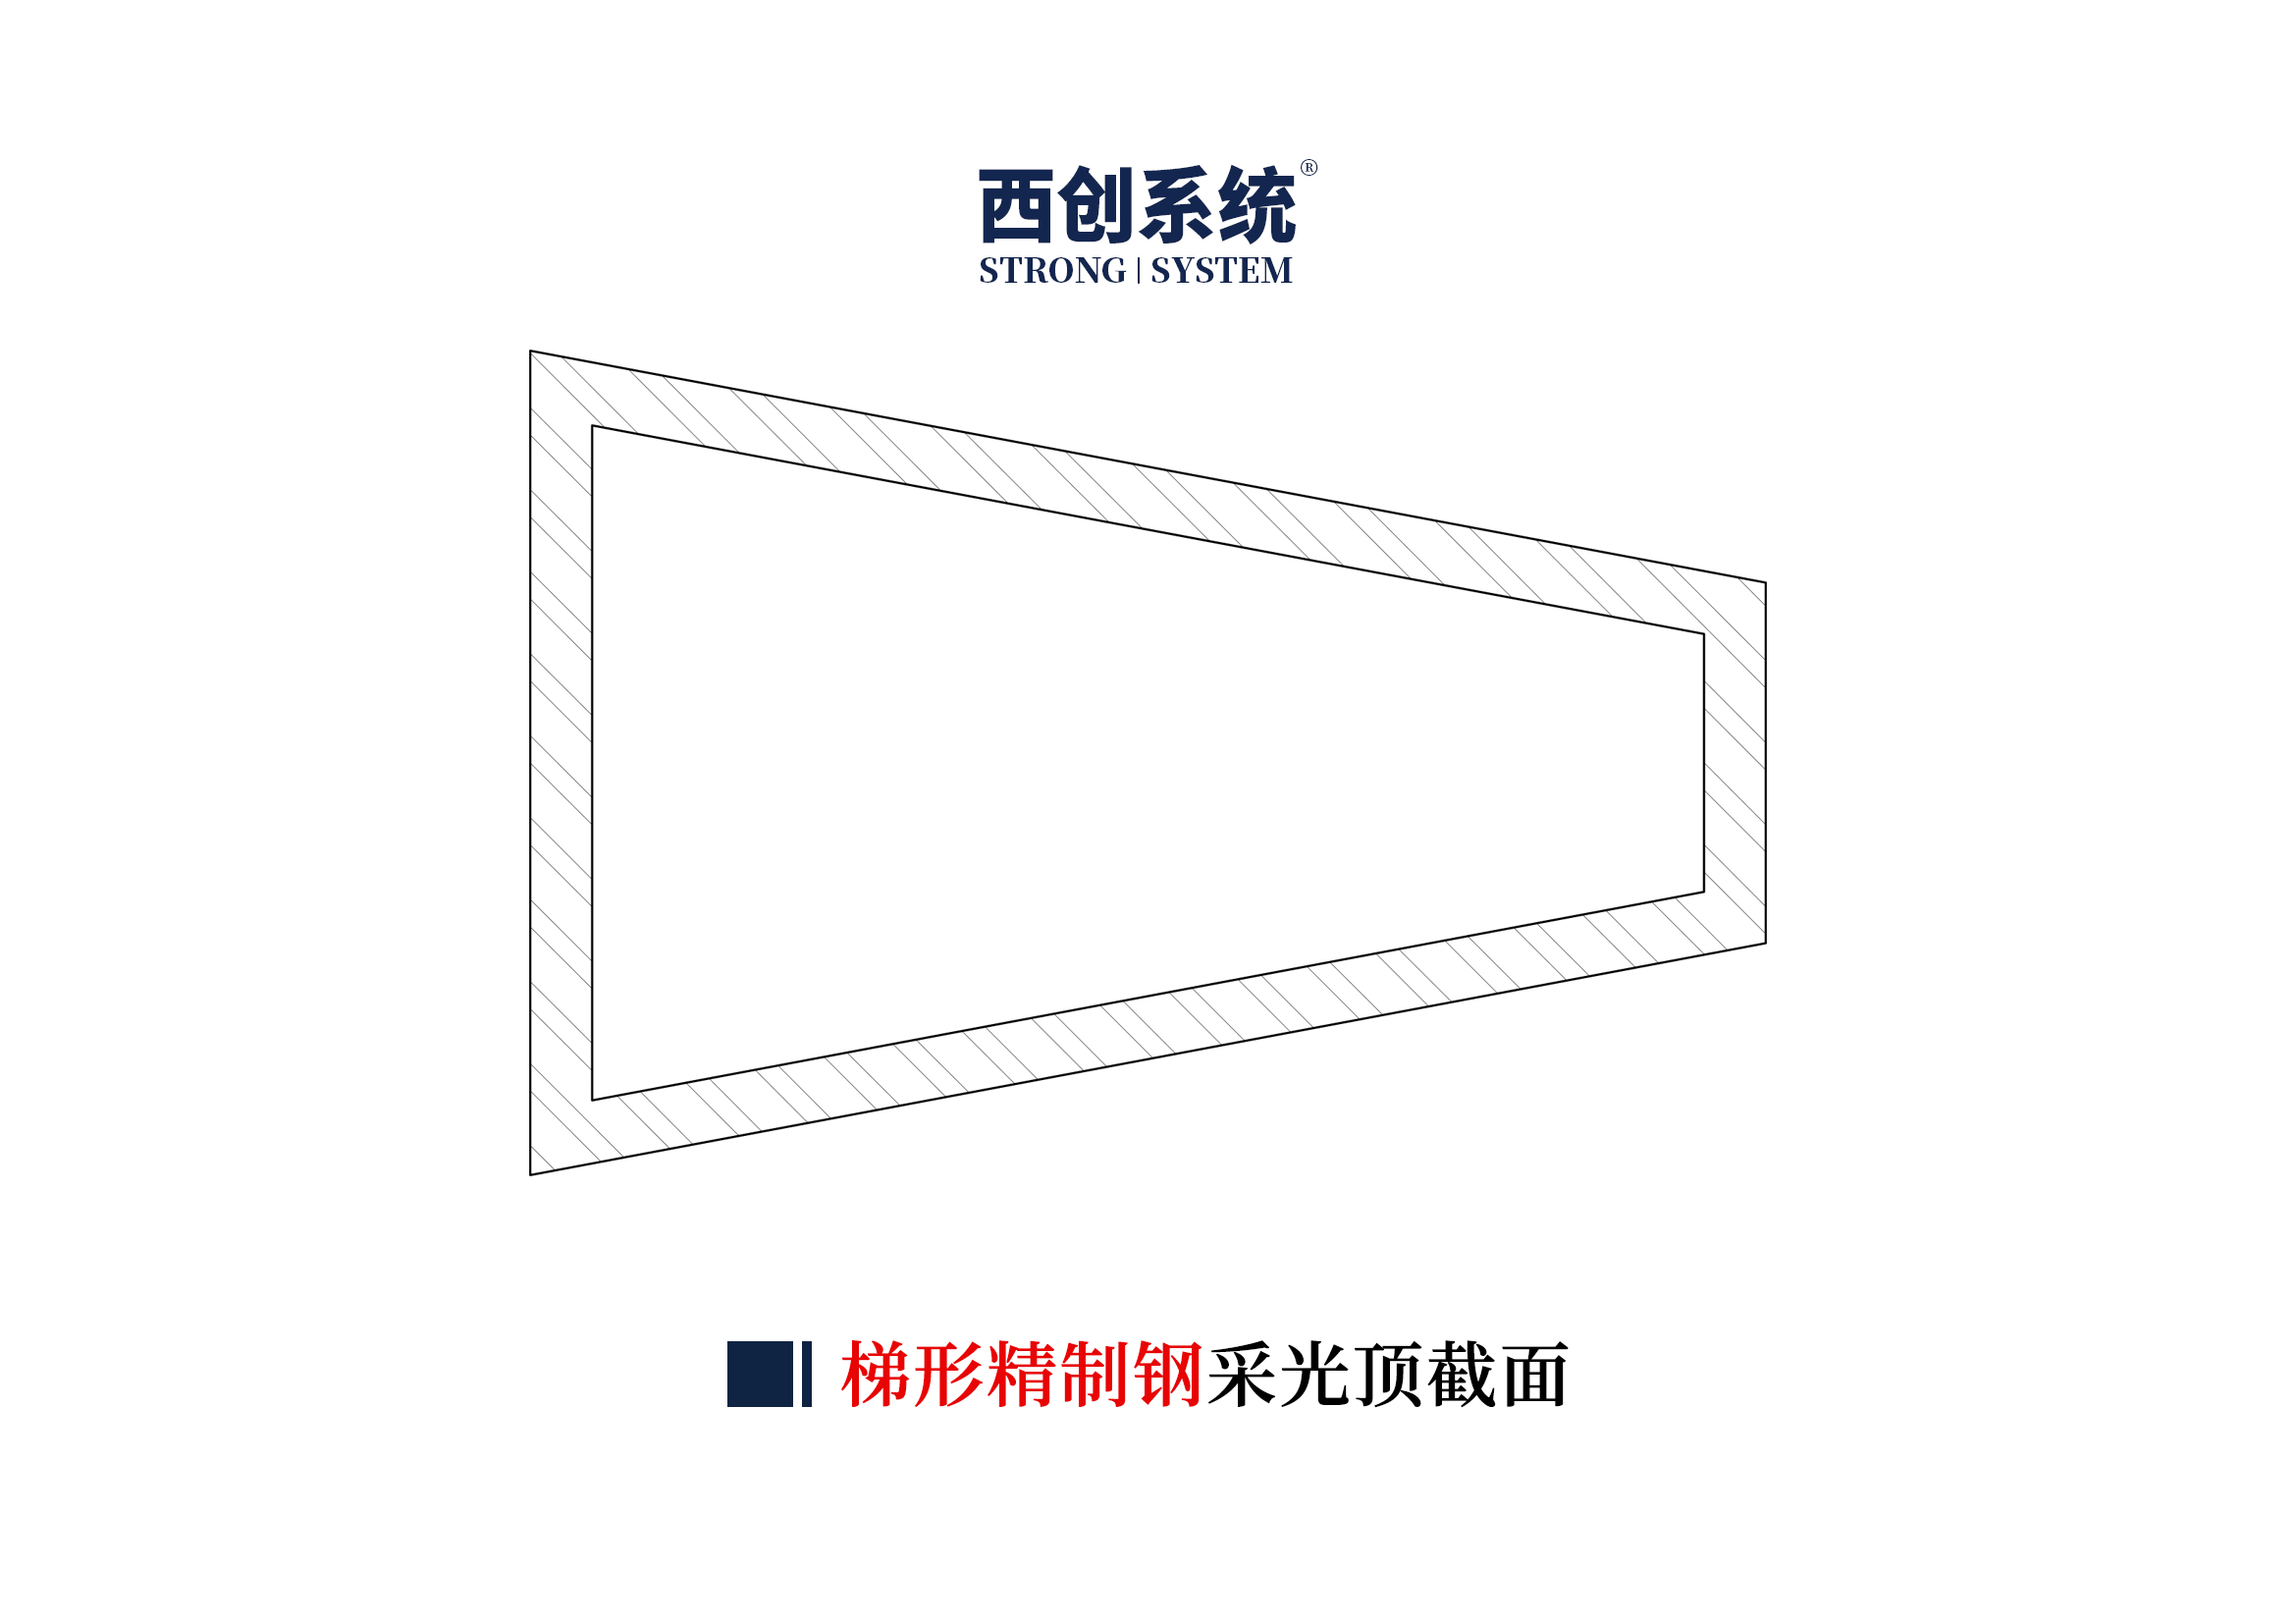 上海项目矩形、梯形精制钢采光顶系统图纸深化案例 - 西创系统(图5)